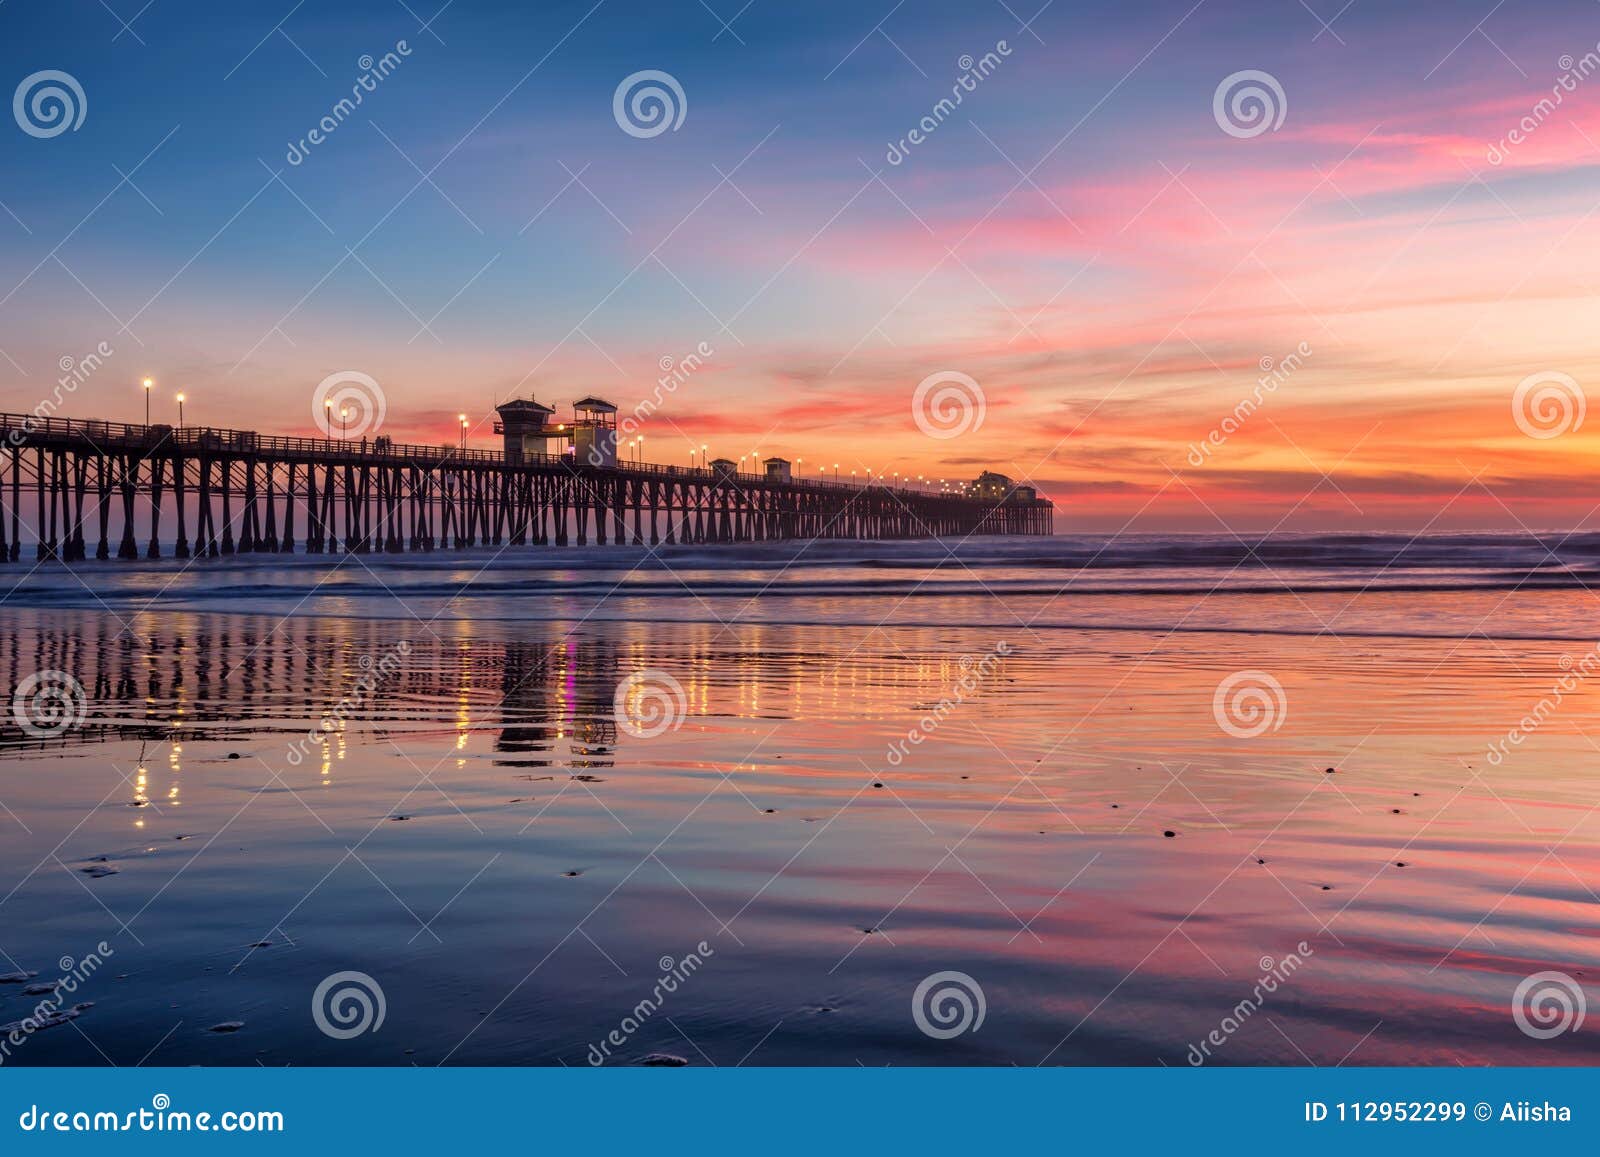 california oceanside pier at sunset